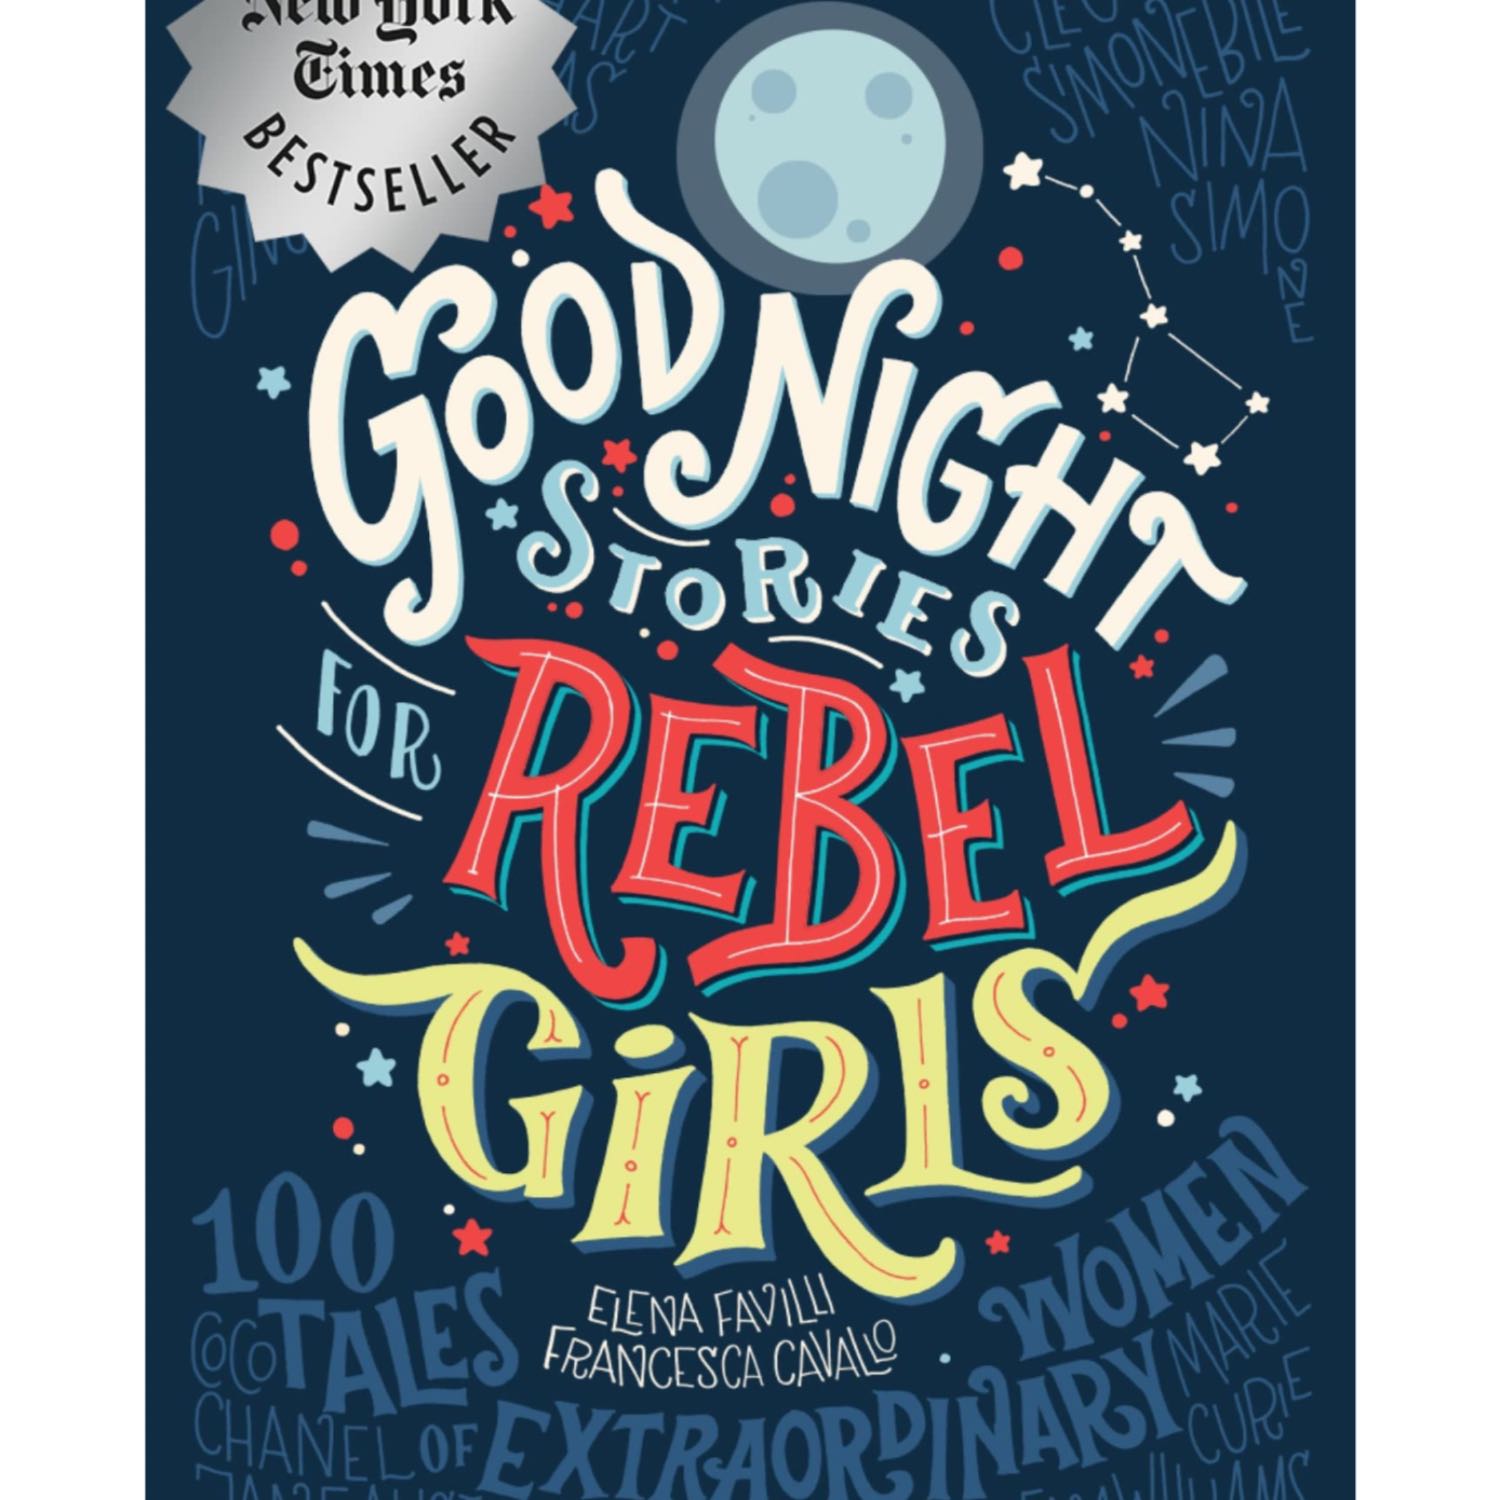 Goodnight Stories for Rebel Girls: Misty Copeland